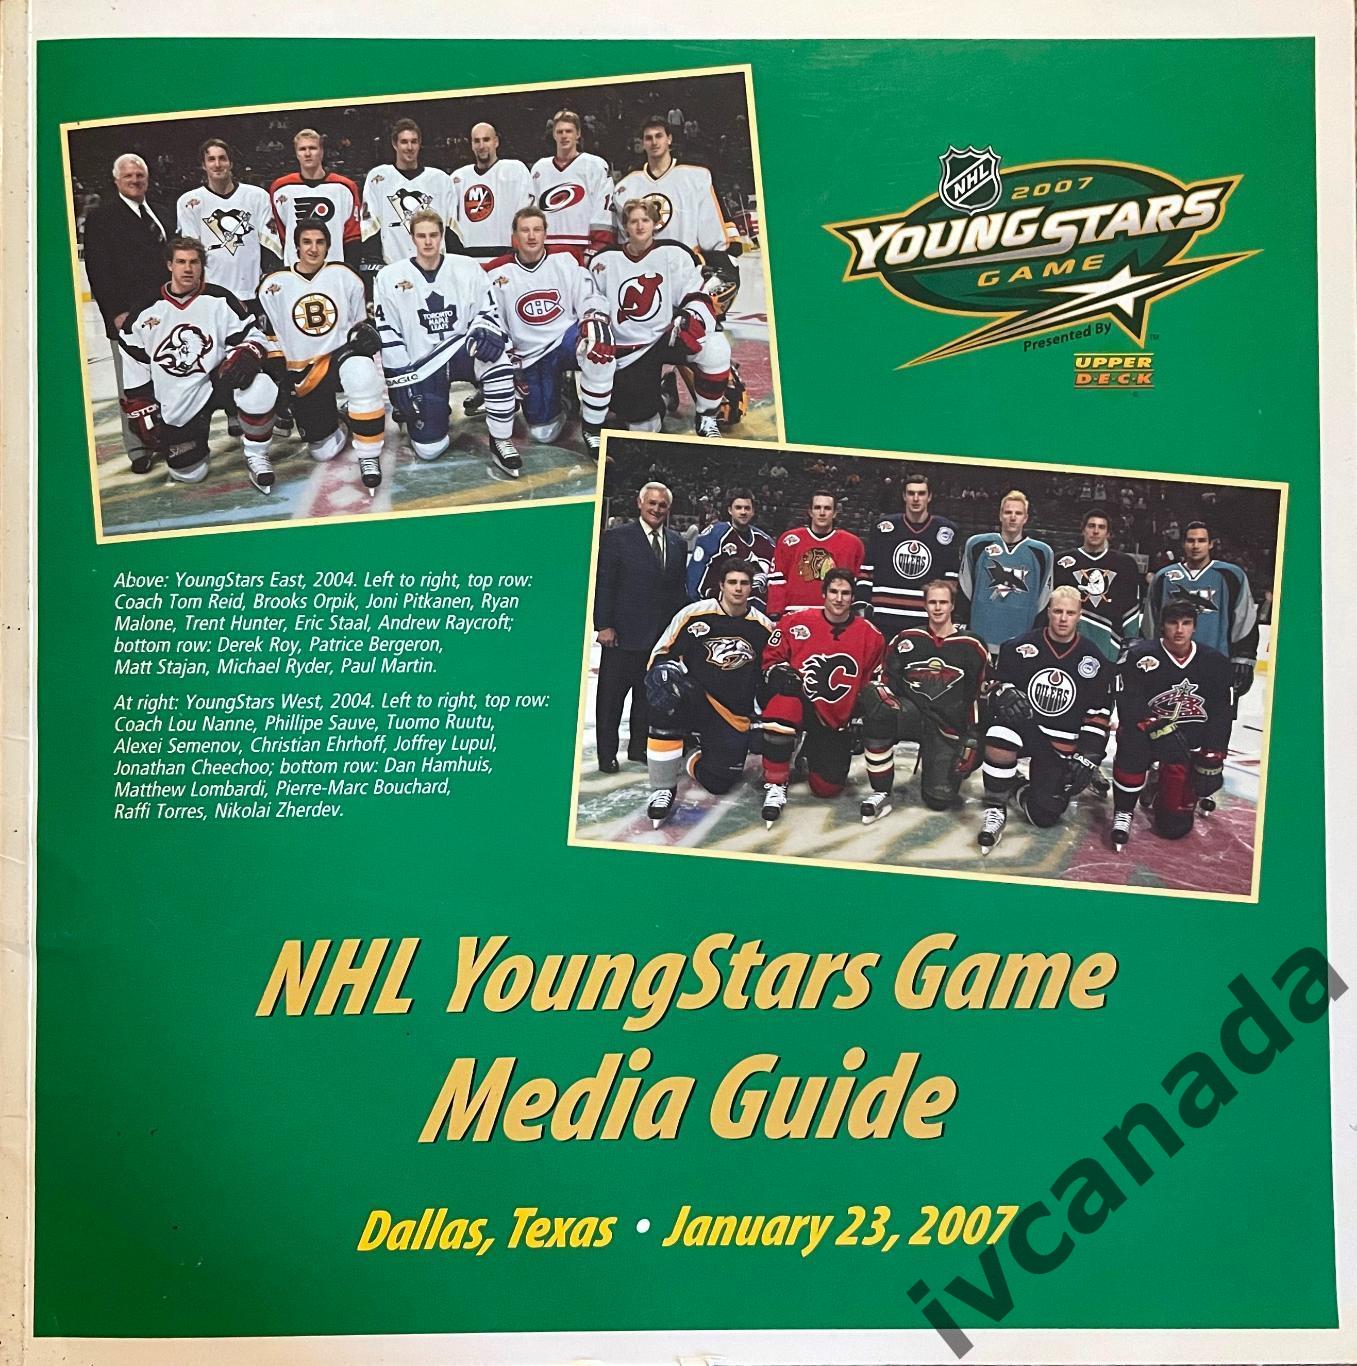 Матч всех звезд НХЛ 2007(ALL STAR GAME NHL) MEDIA GUIDE 24 января 2007 г. Даллас 1